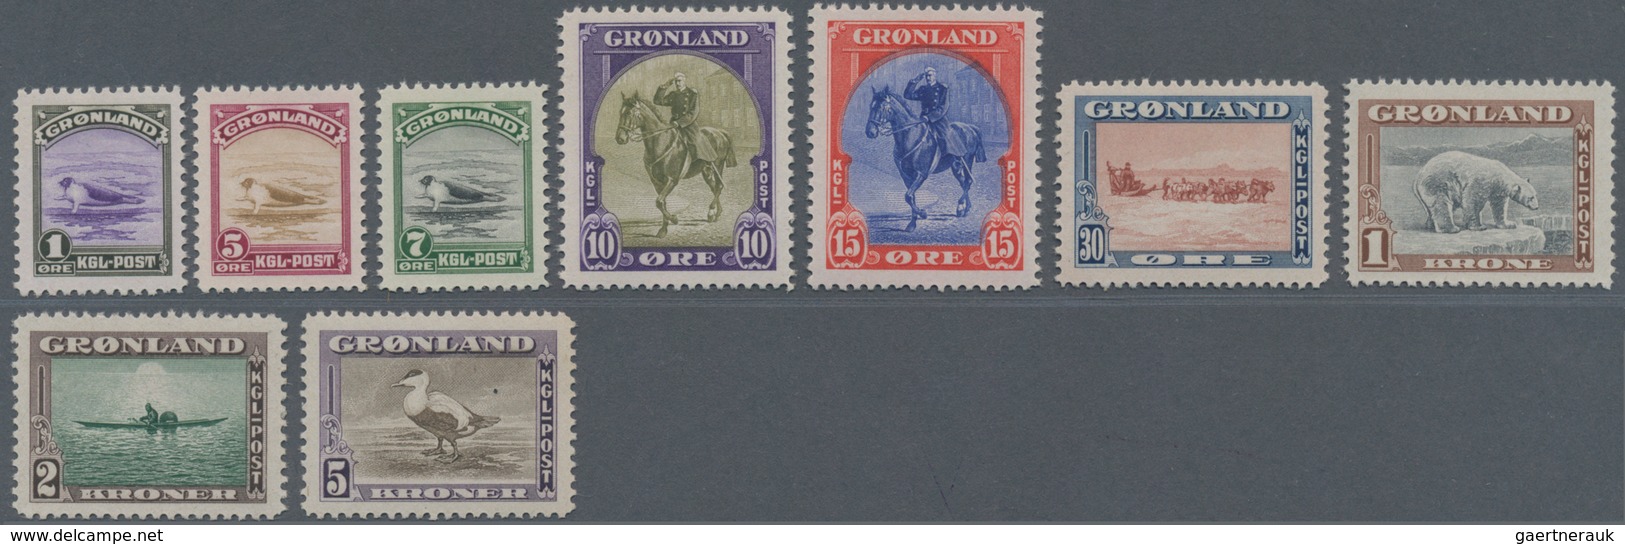 Dänemark - Grönland: 1916/45 Paketportomarken Der 2. Ausgabe Sowie Freimarkenausgabe, Diese Rückseit - Briefe U. Dokumente